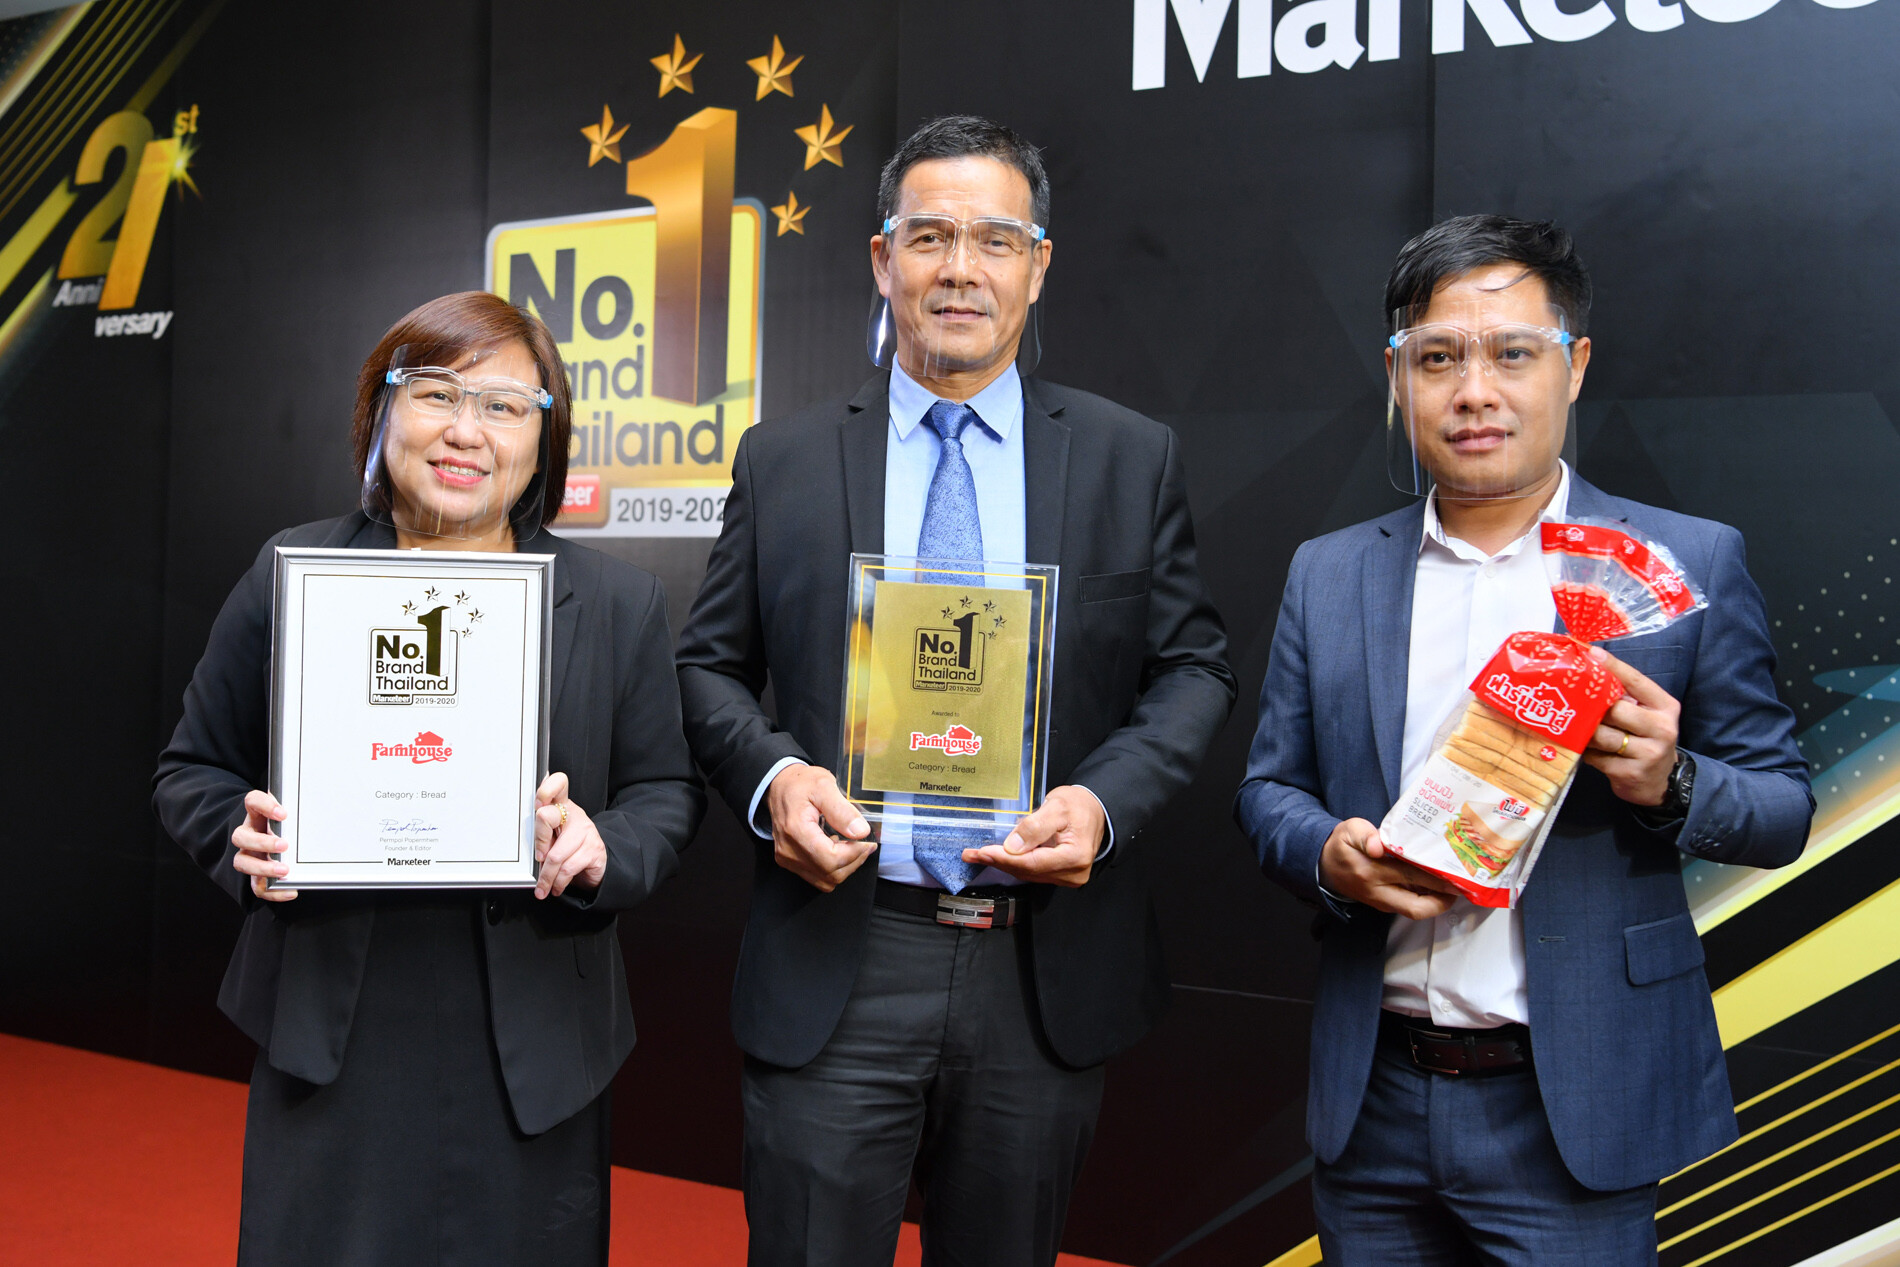 “ฟาร์มเฮ้าส์” รับรางวัล “Marketeer No.1 Brand Thailand 2019-2020” ตอกย้ำคุณภาพสินค้าครองใจผู้บริโภคอันดับ 1 ต่อเนื่อง 3 ปีซ้อน